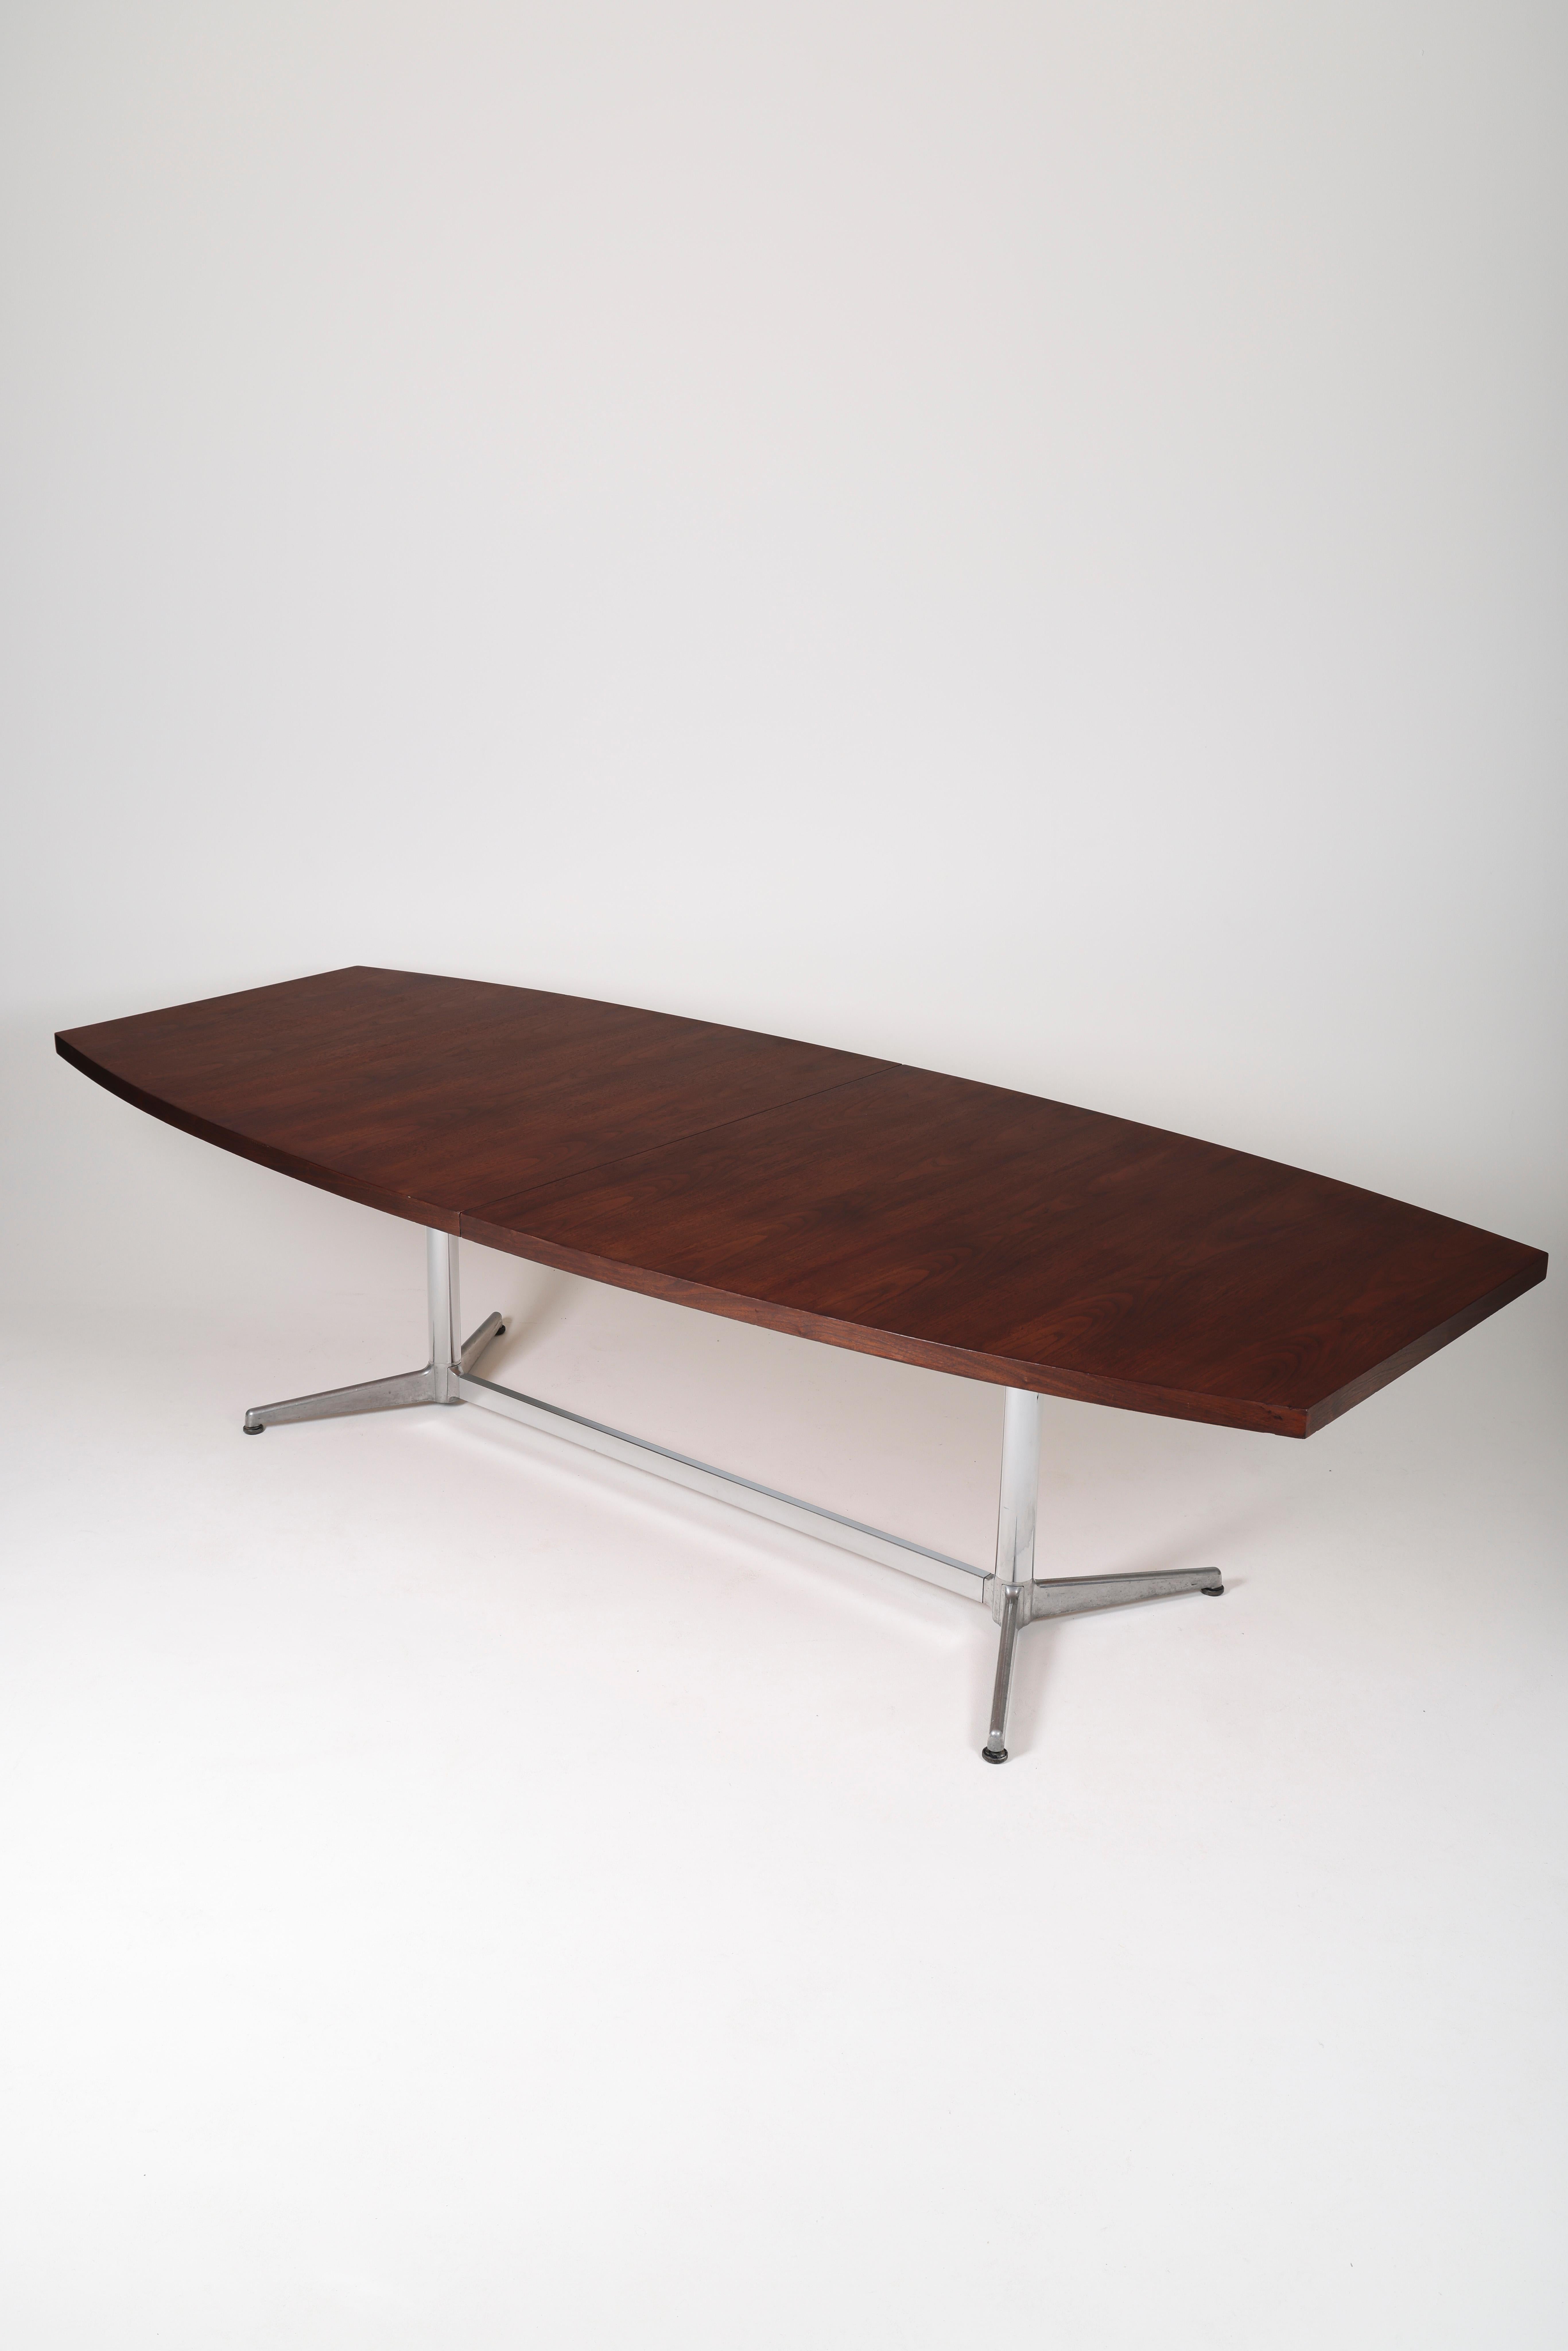 Grande table de conférence ou table de salle à manger en bois de rose du designer italien Giancarlo Piretti, années 1970. Table en bois avec pieds en métal. Très bon état.
LP925